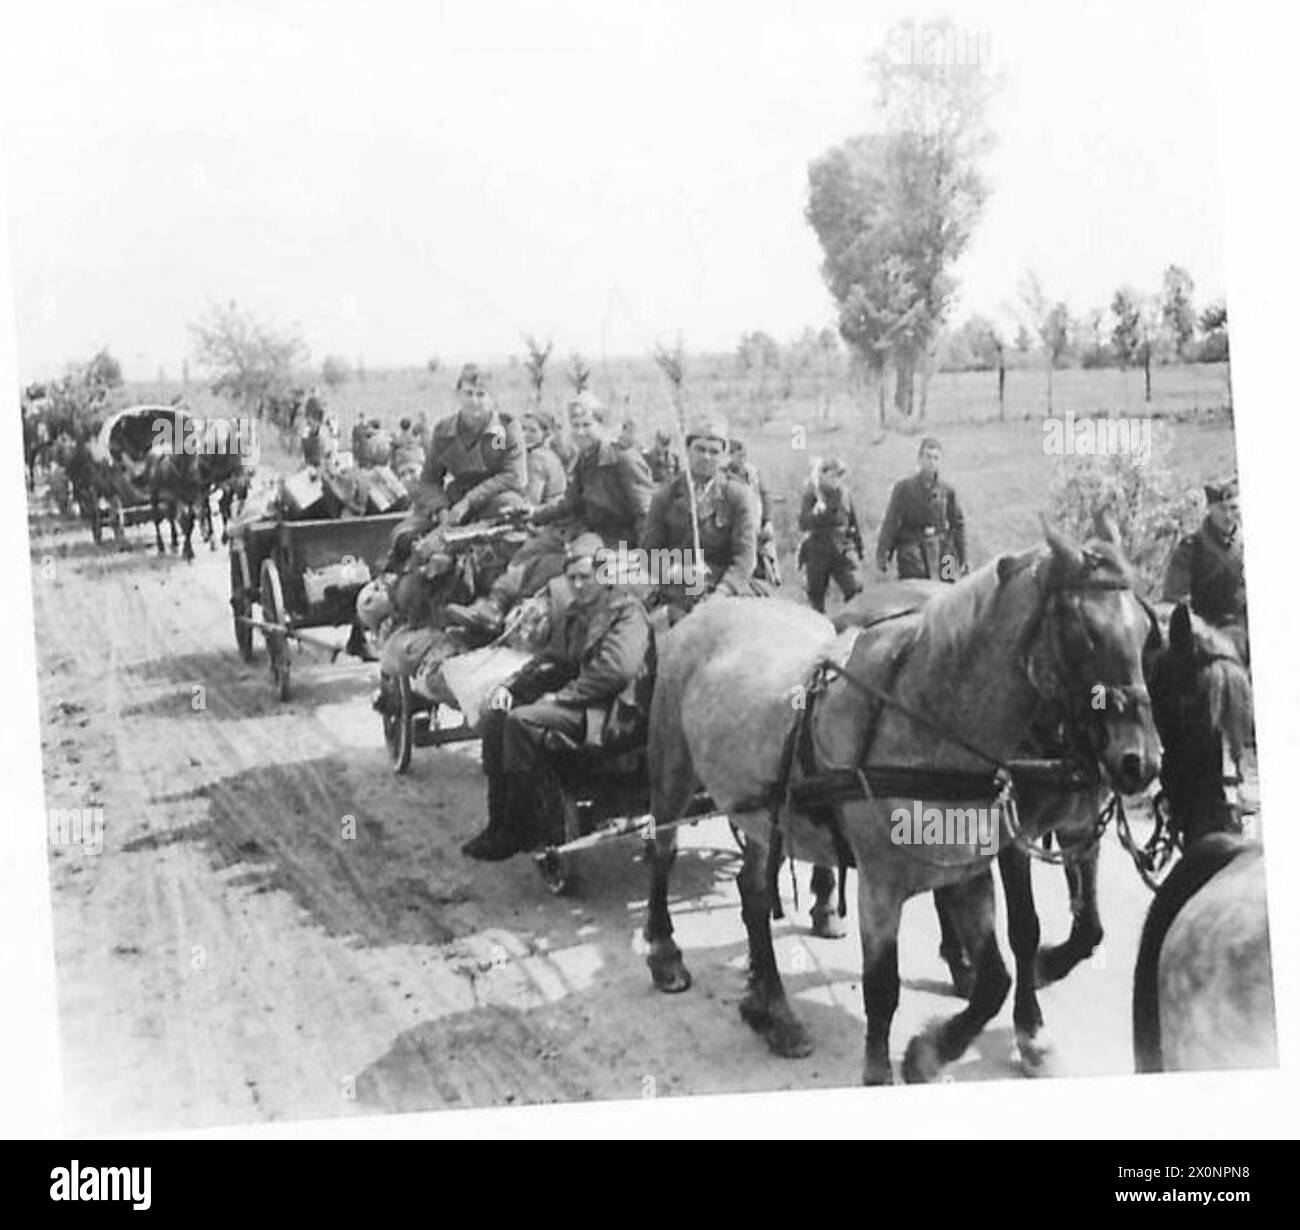 LES CHETNIKS SE RENDENT - transport Chetnik, principalement tiré par des chevaux, en mouvement. Négatif photographique, Armée britannique Banque D'Images